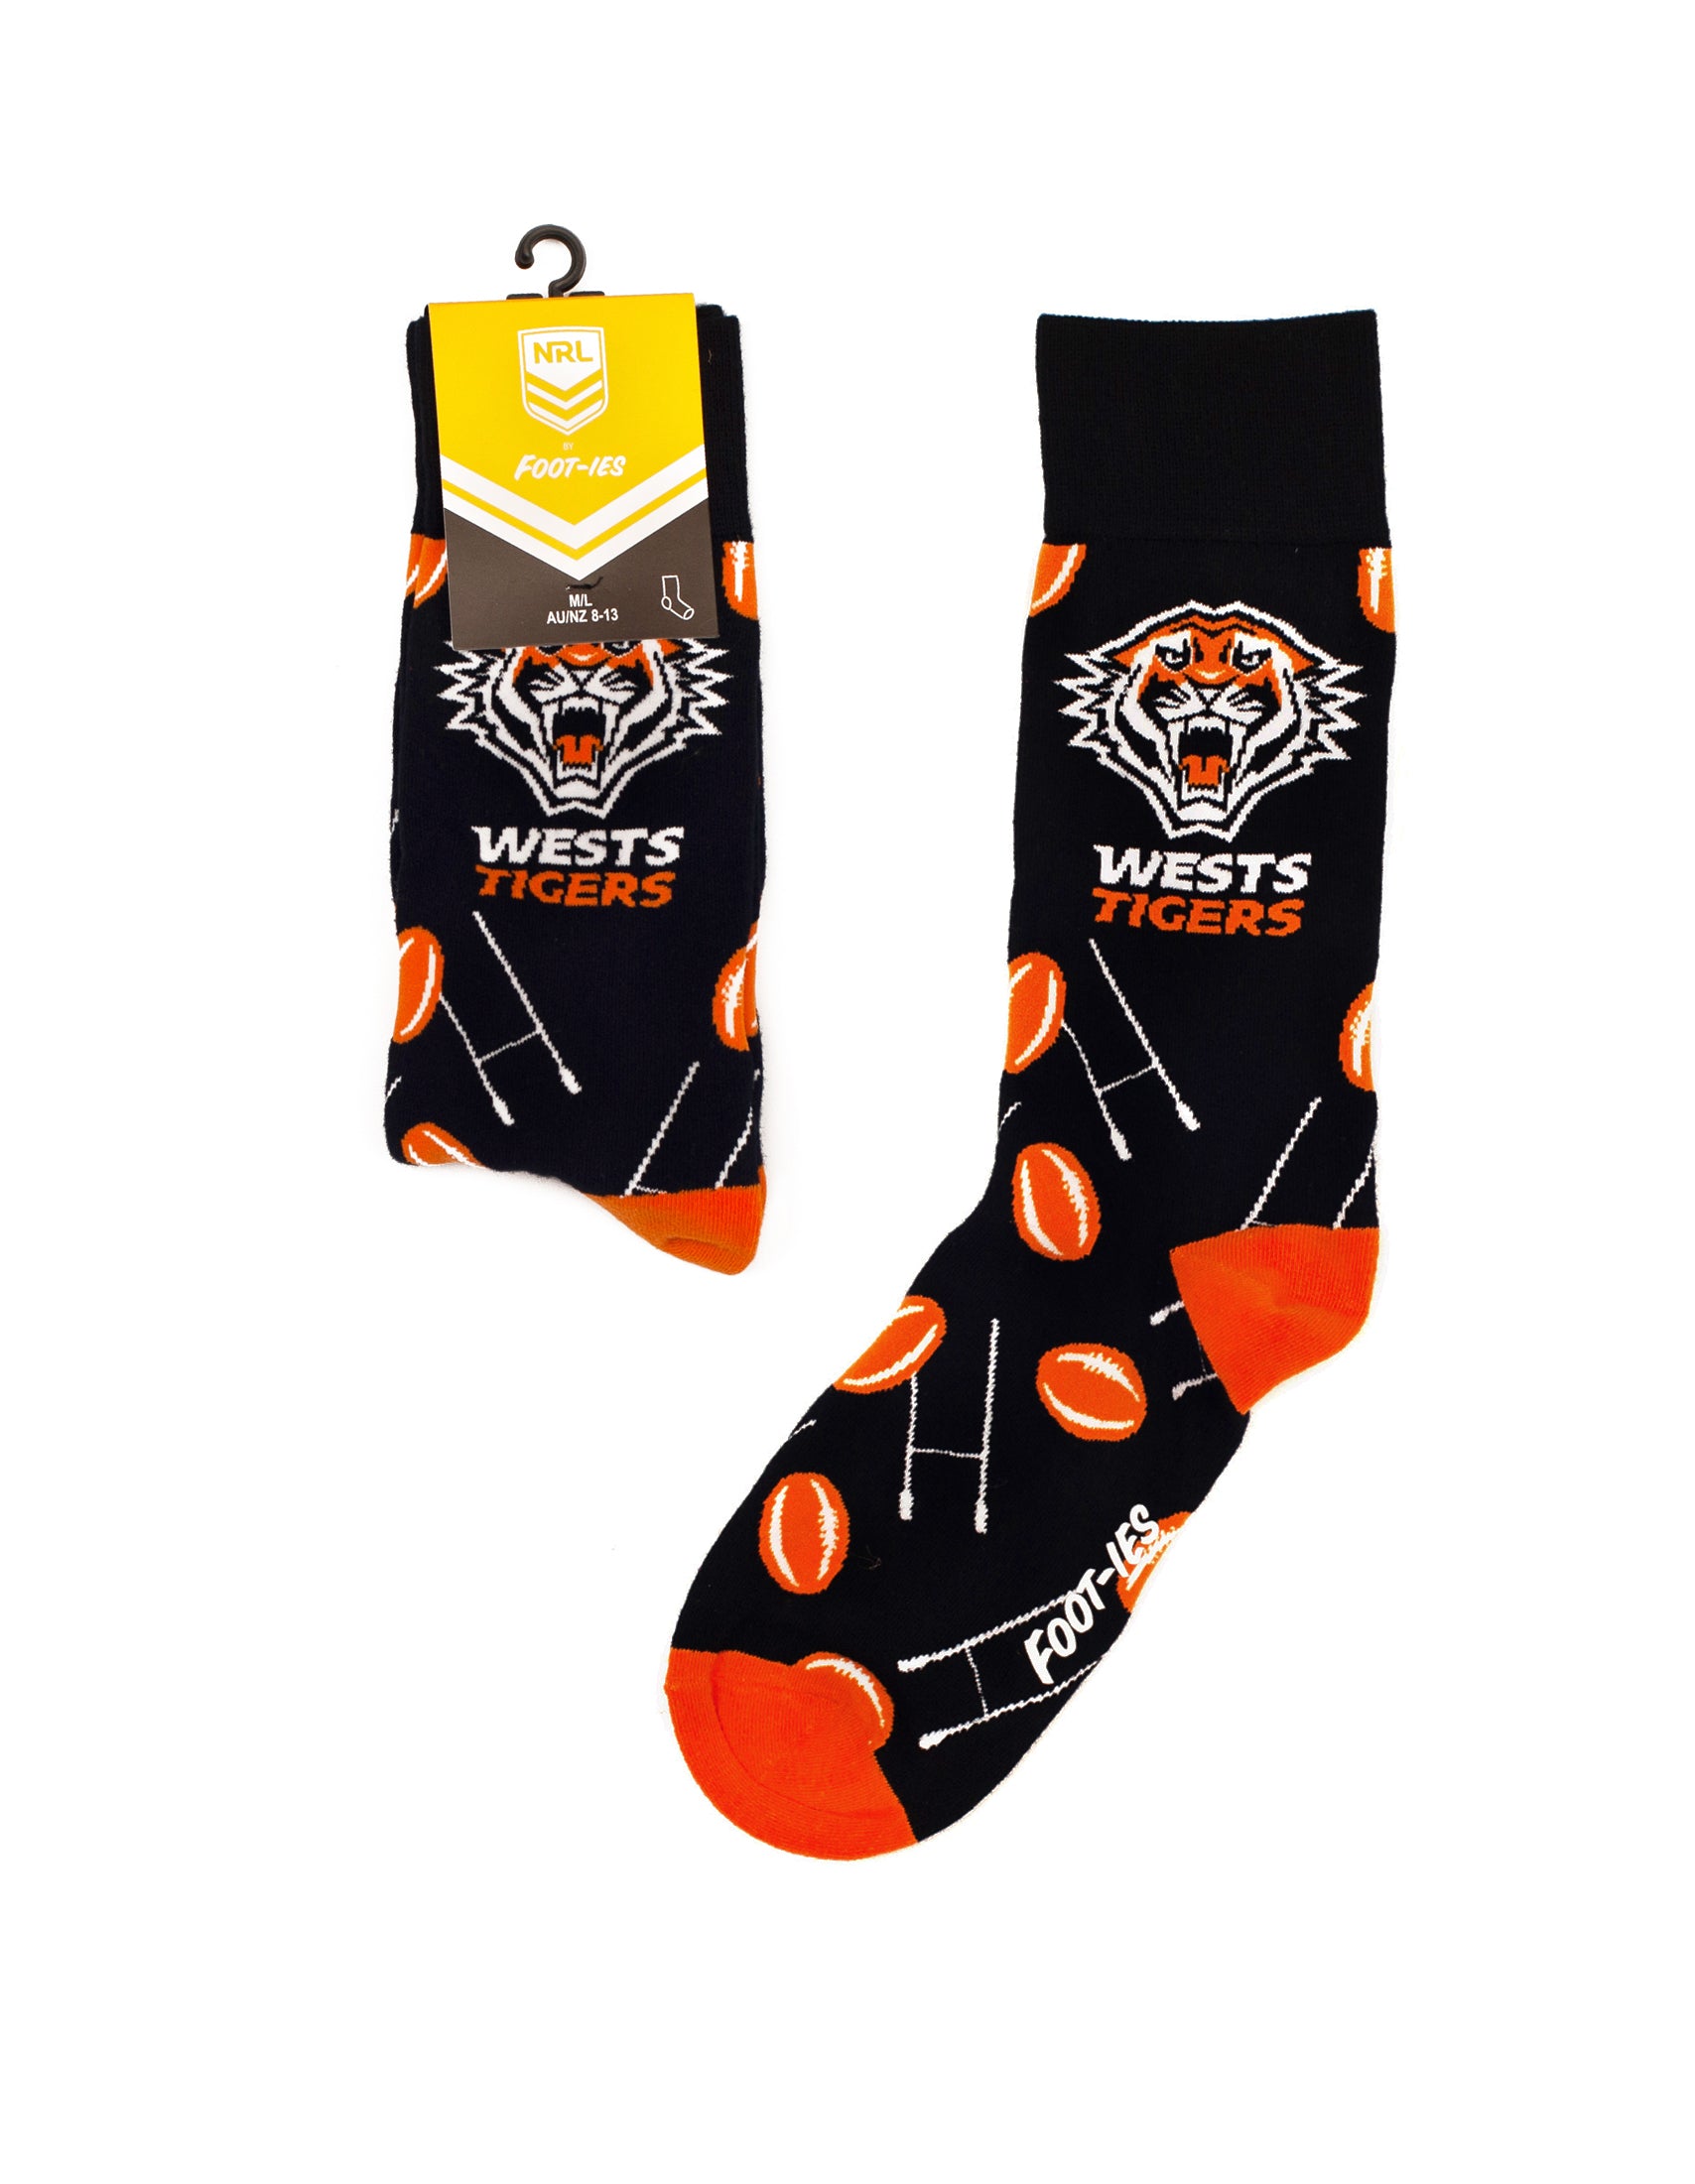 Black Wests Tigers nrl goal post socks for men